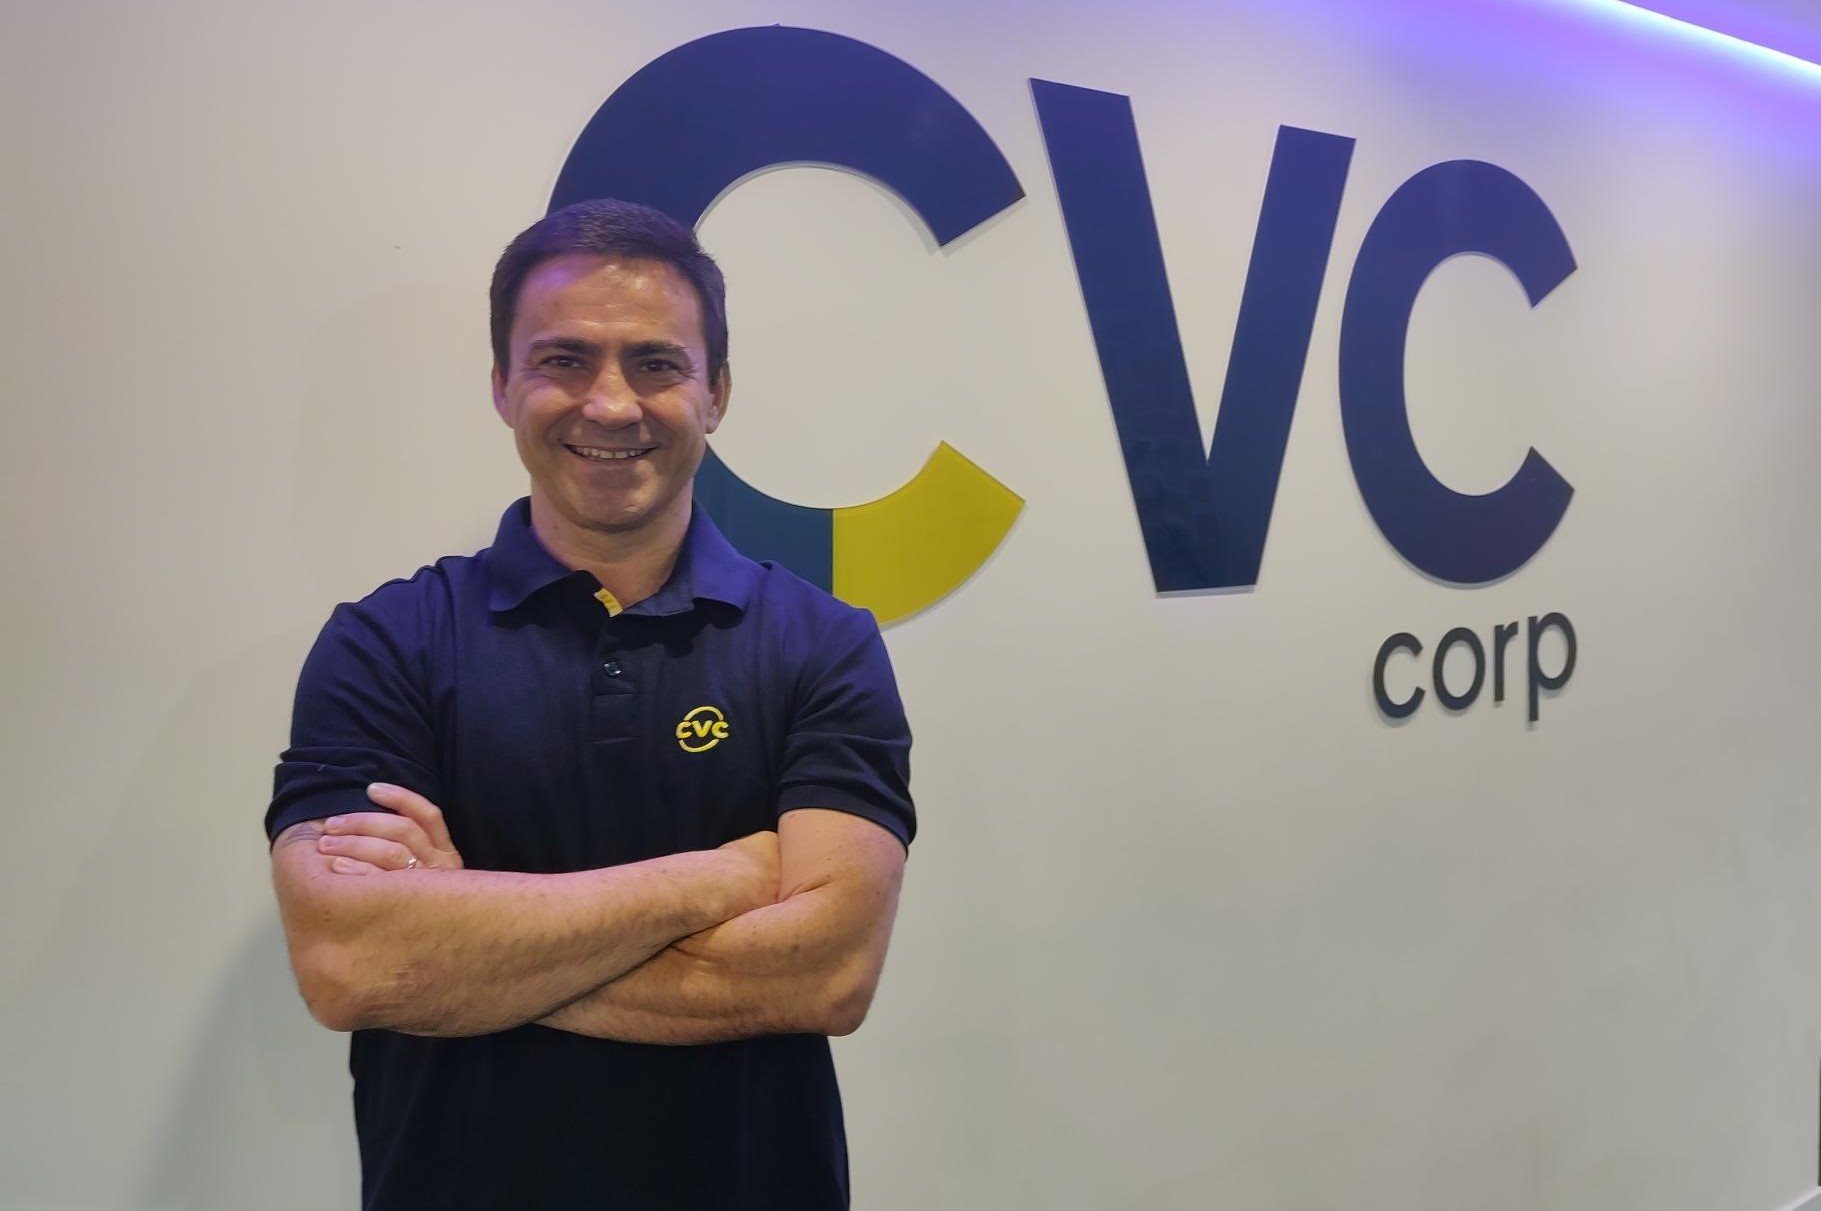 Rogério Mendes, de volta à CVC Corp